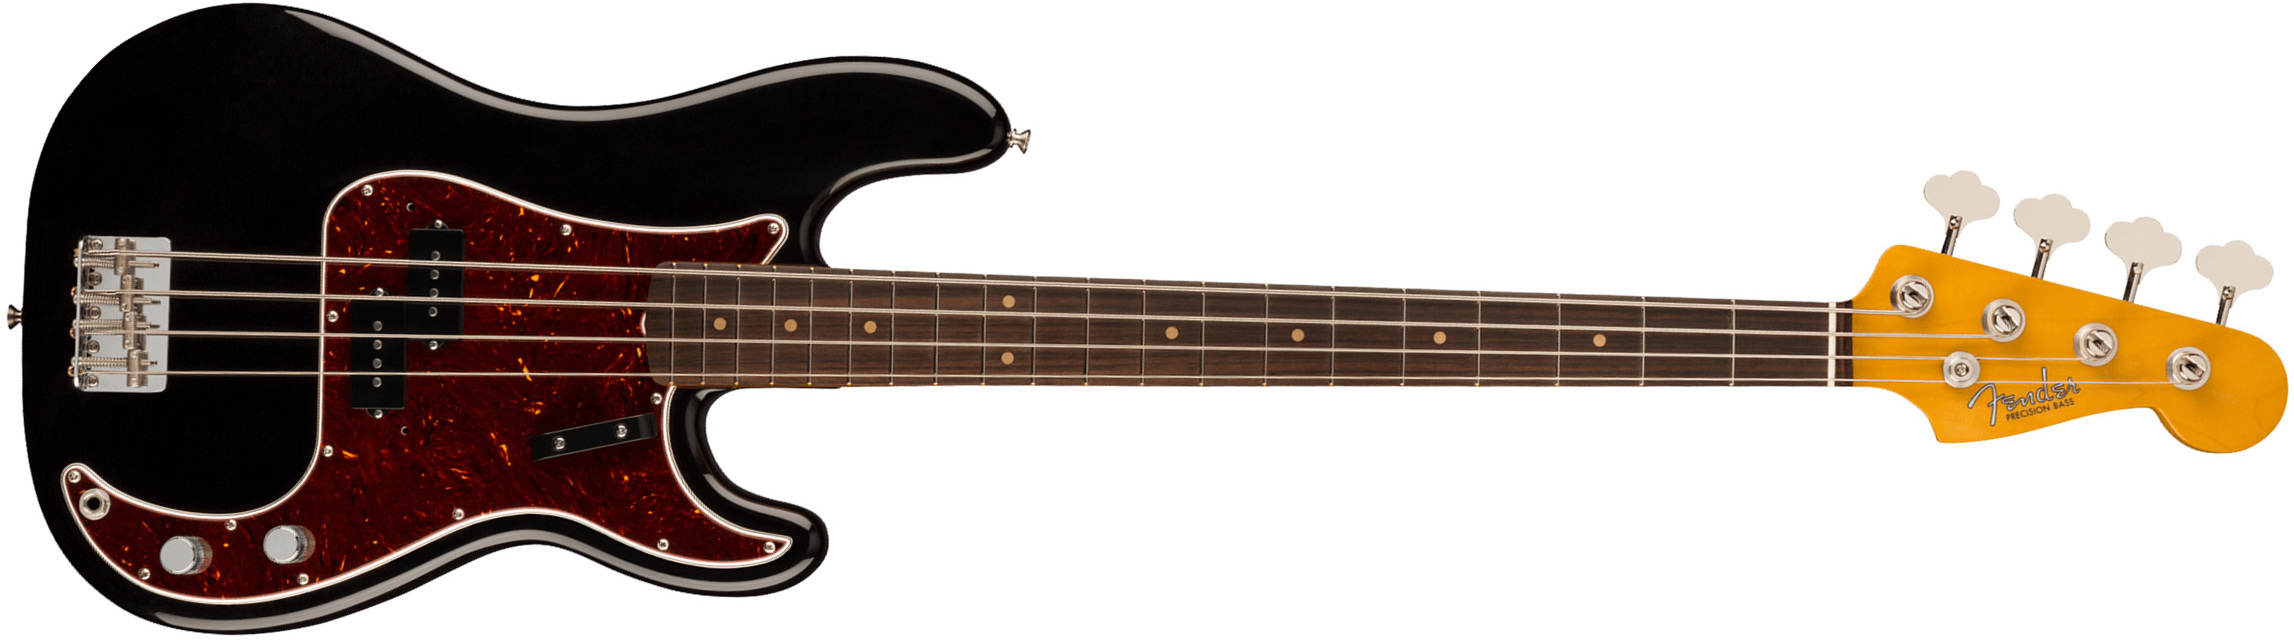 Fender Precision Bass 1960 American Vintage Ii Usa Rw - Black - Bajo eléctrico de cuerpo sólido - Main picture